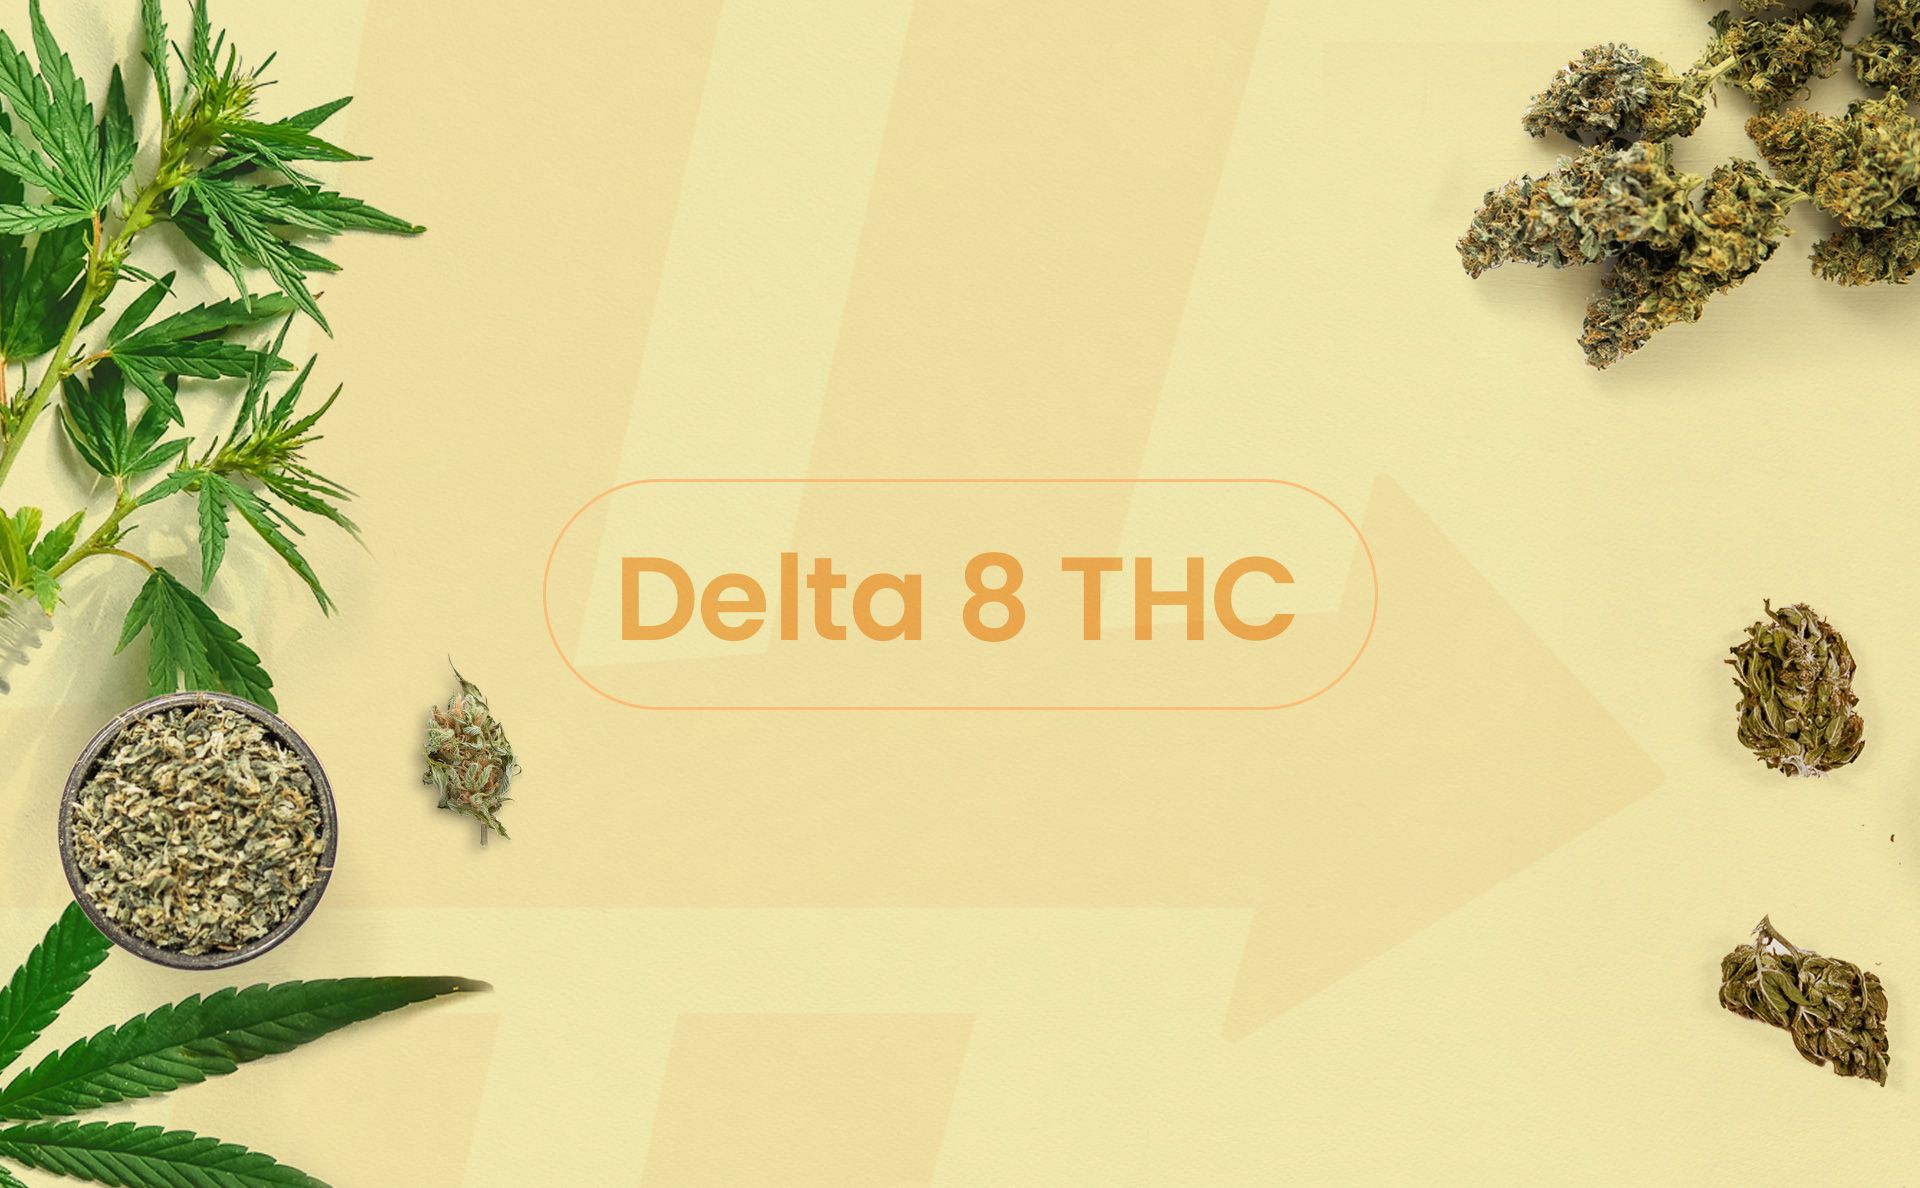 Delta-8 THC